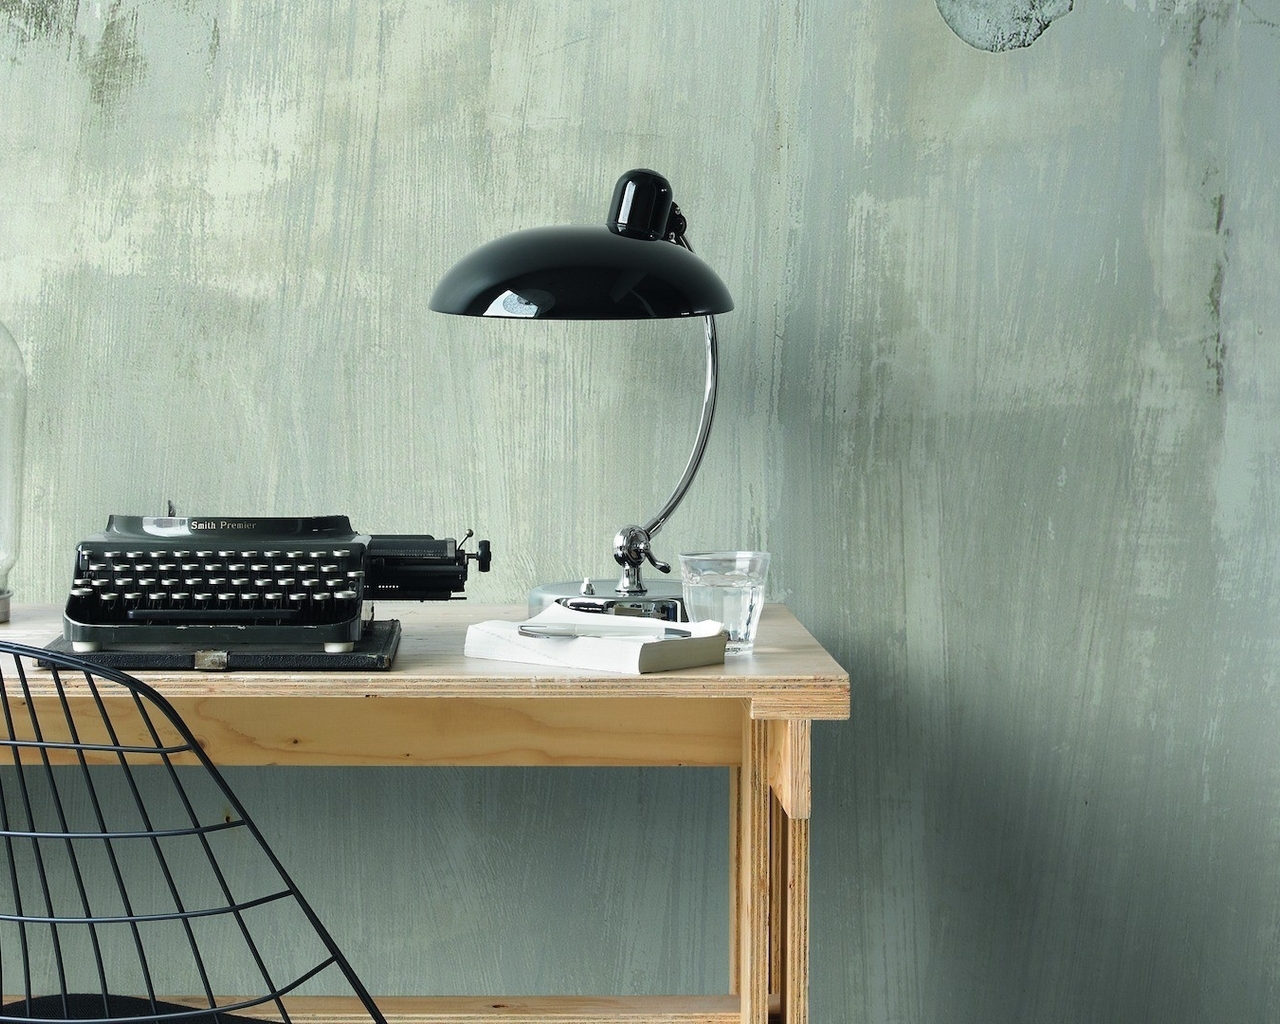 Картинка: Рабочий стол, лампа, стена, стол, печатная машинка, чучело, стул